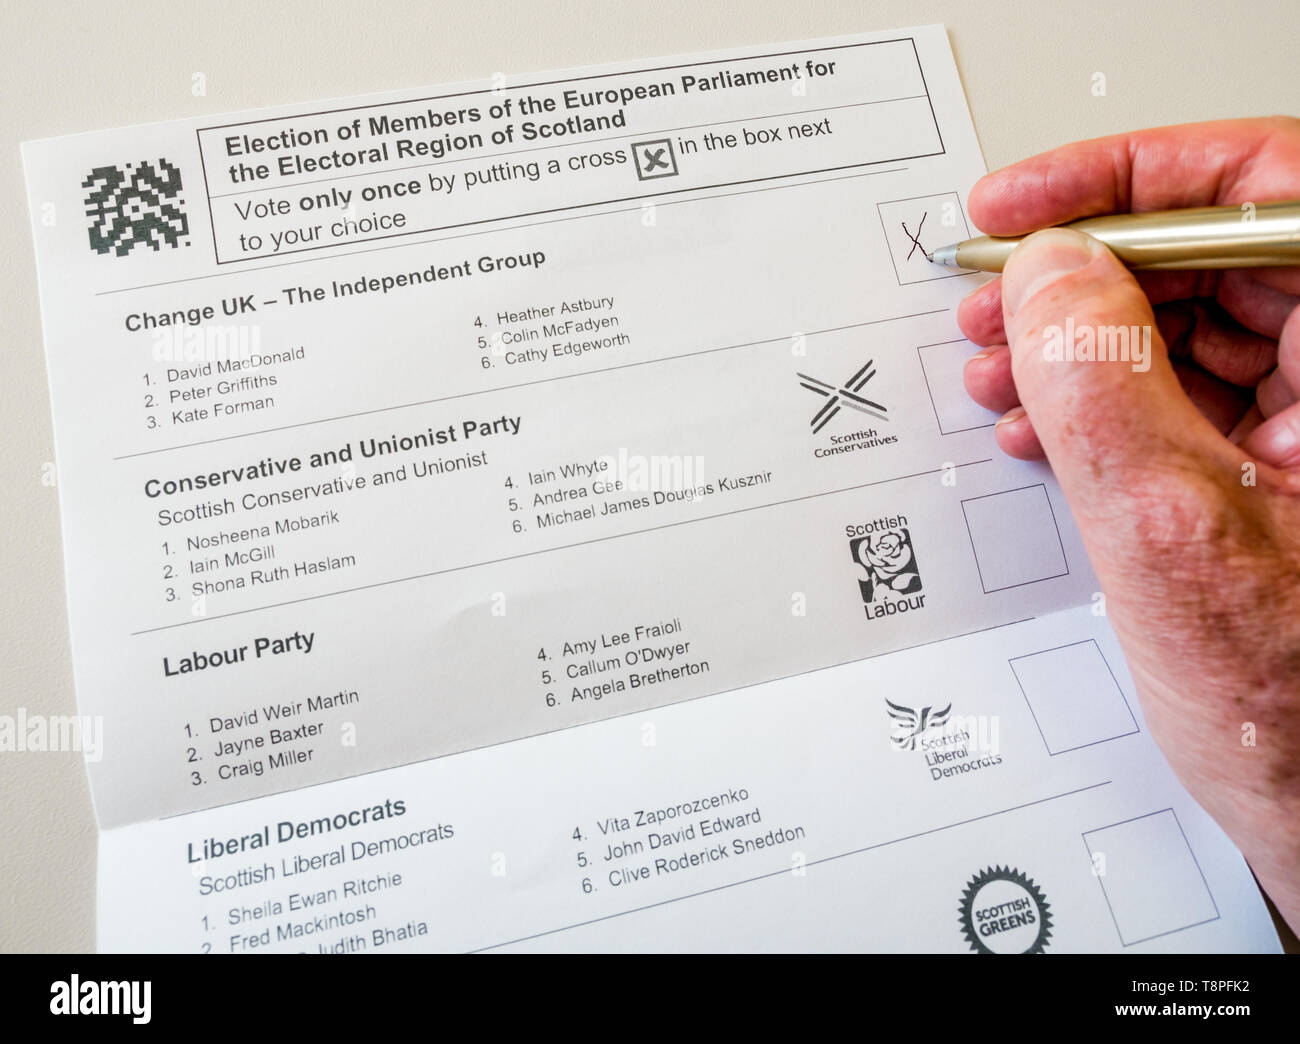 L'uomo voto sulla votazione a scrutinio scozzese carta per modificare UK parte nel Parlamento europeo elezione, Scozia, Maggio 2019 Foto Stock